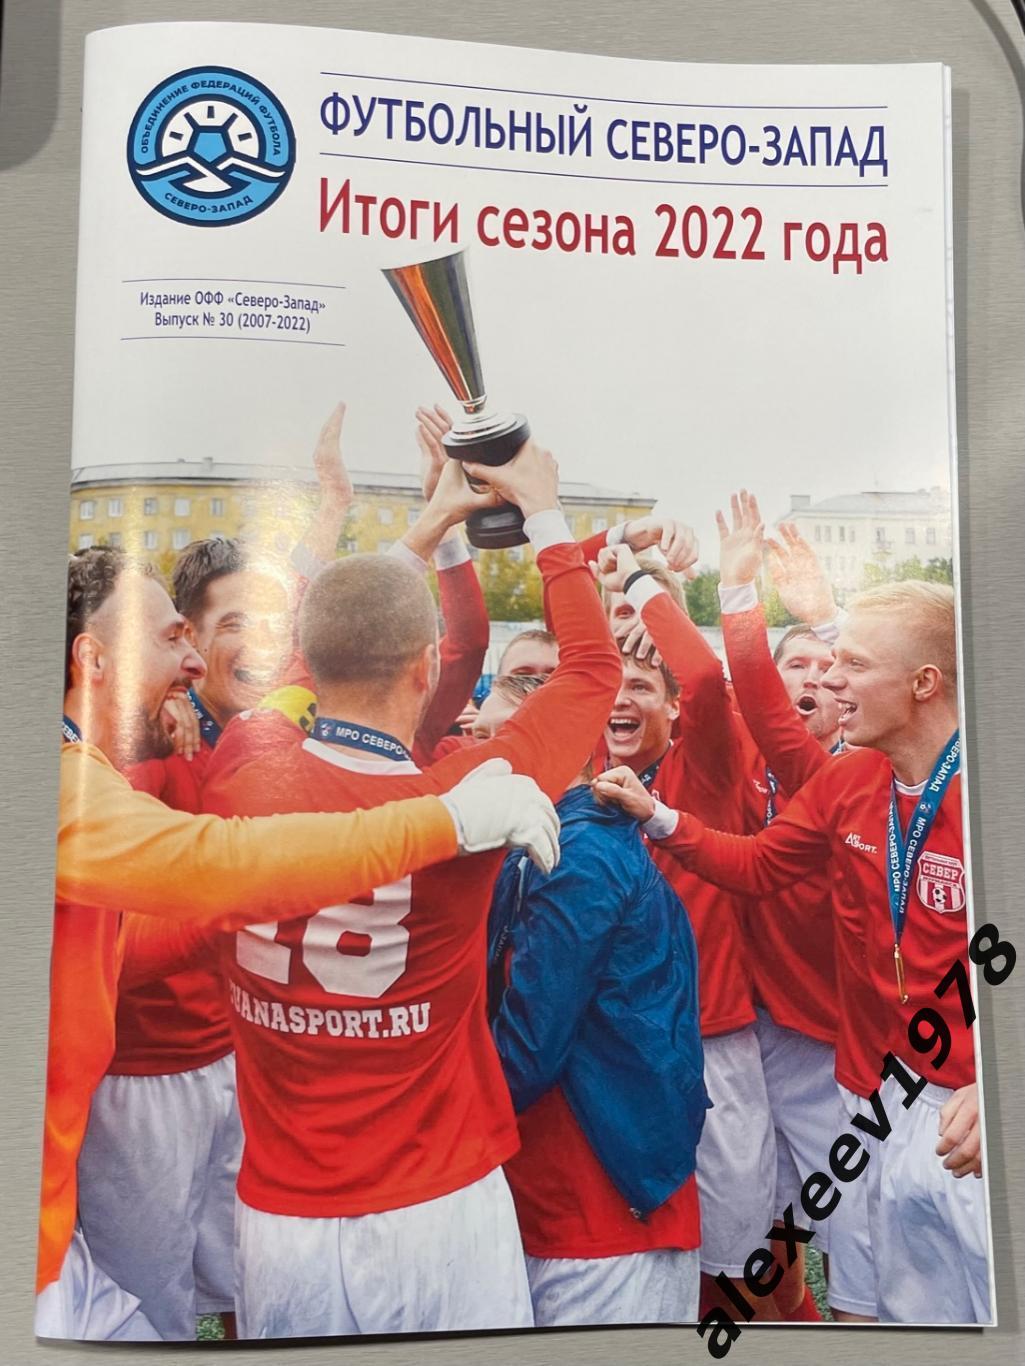 Журнал МРО ОФФ Северо-Запад. Итоги 2022 года. (Зенит, Динамо, Санкт-Петербург)